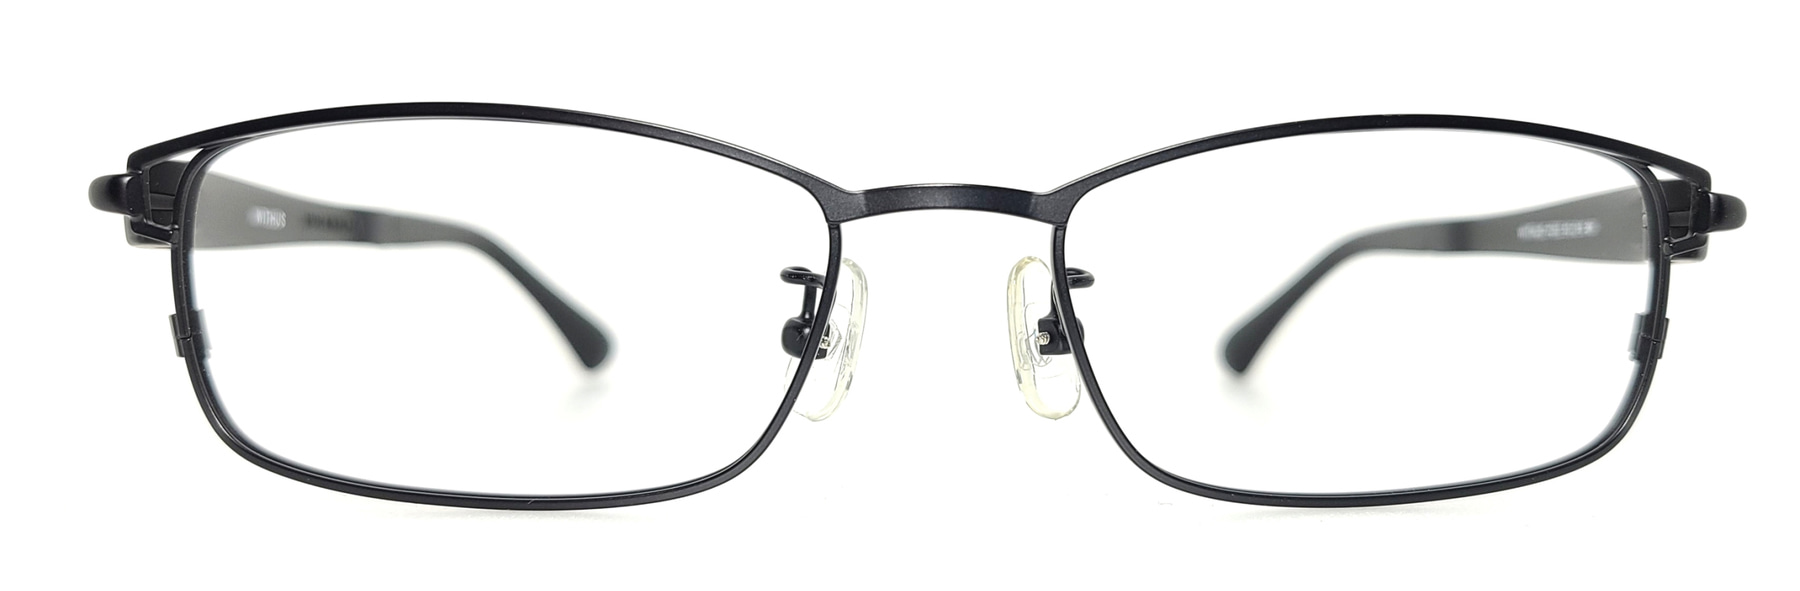 WITHUS-7252, Korean glasses, sunglasses, eyeglasses, glasses